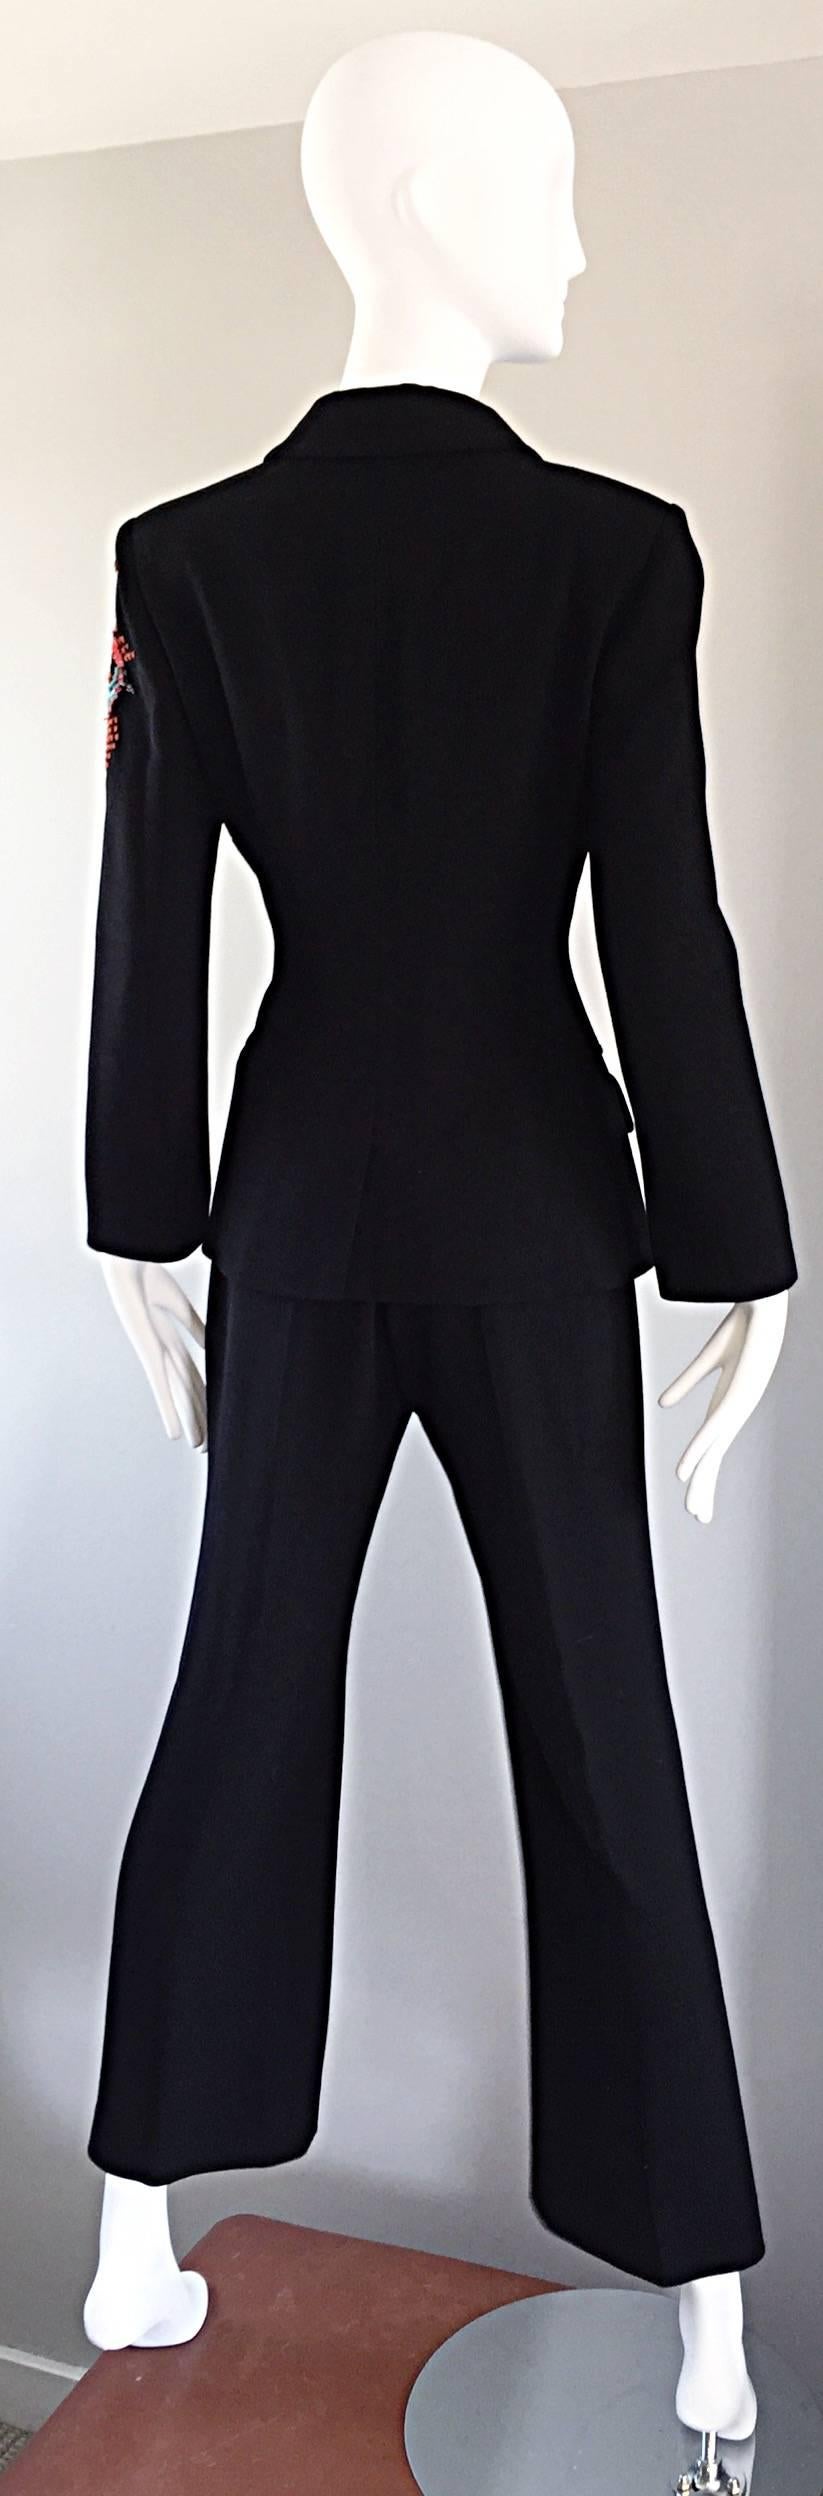 Spectacular Vintage Christian Lacroix Black Beaded Lizard Le Smoking Pant Suit For Sale 1